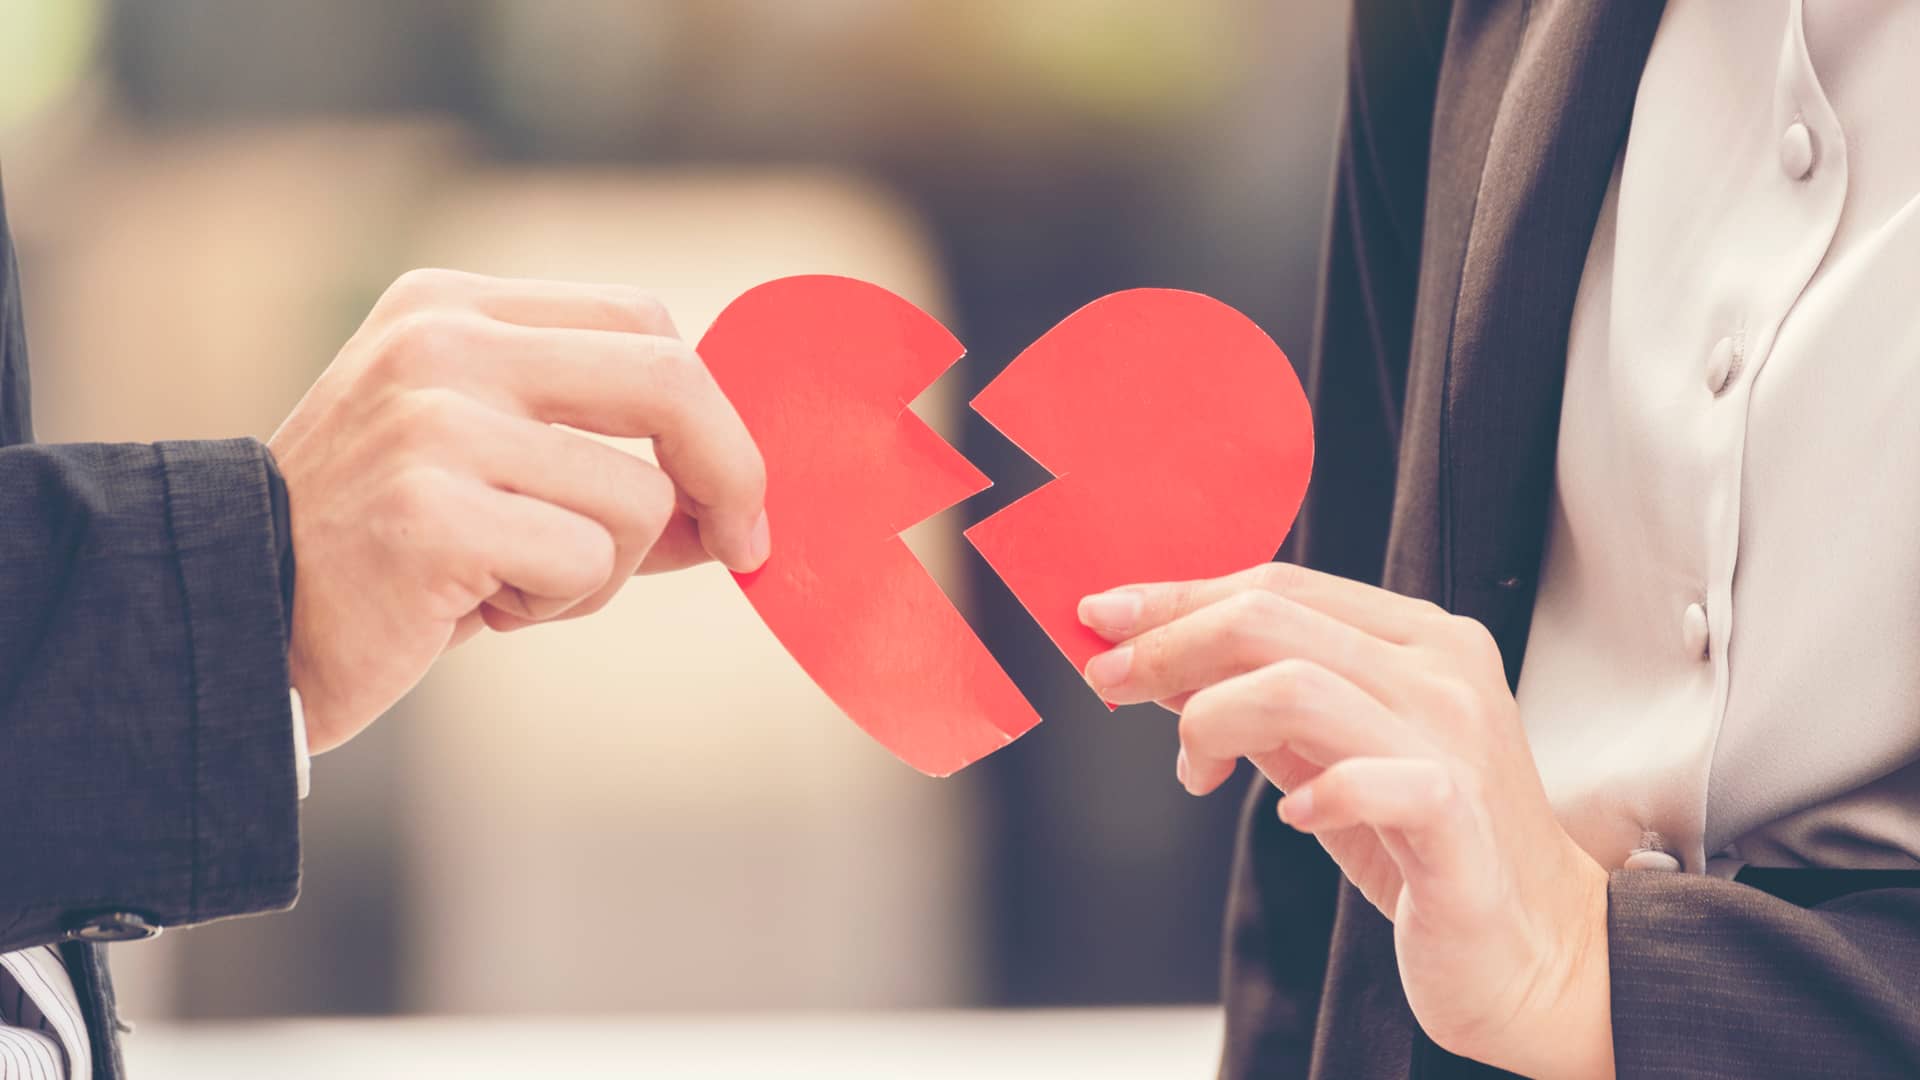 Dos personas sujetan los pedazos de un corazón roto de cartulina, las rupturas son una de las razones por las que se puede querer salir de una hipoteca compartida